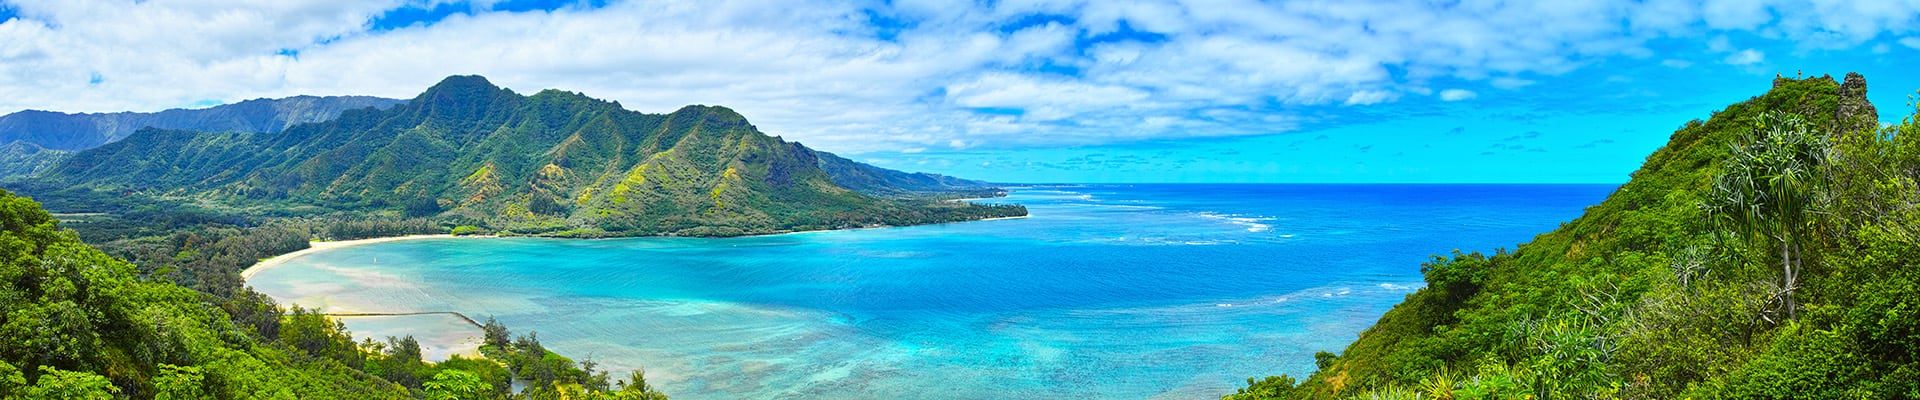 do cruise ships go to hawaii